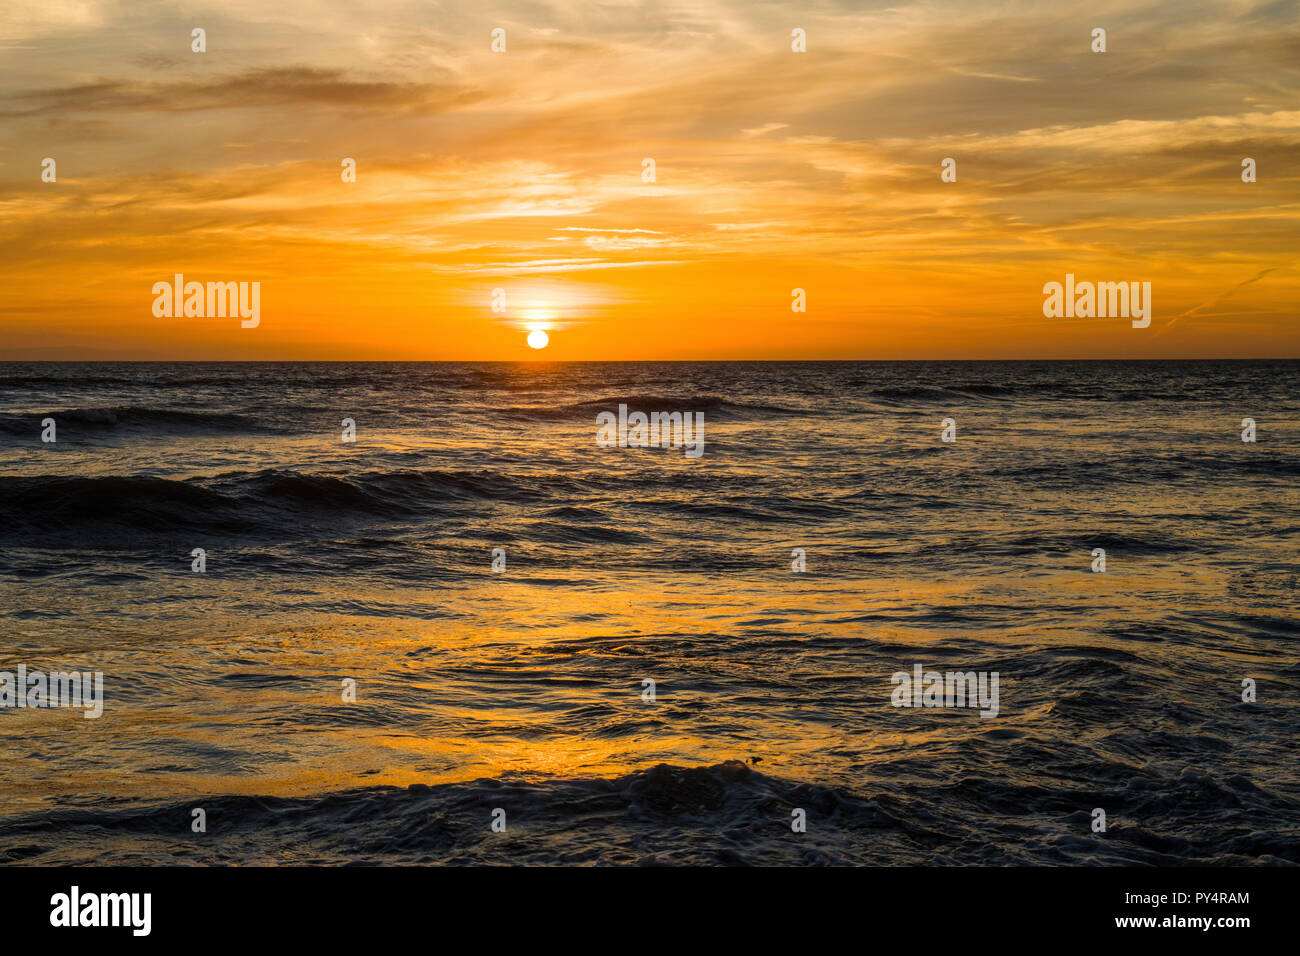 Le soleil se couche sur la plage de Llantwit Major avec de belles couleurs orange en raison de l'autre côté de la mer, sur la côte du Glamorgan, Pays de Galles du sud Banque D'Images